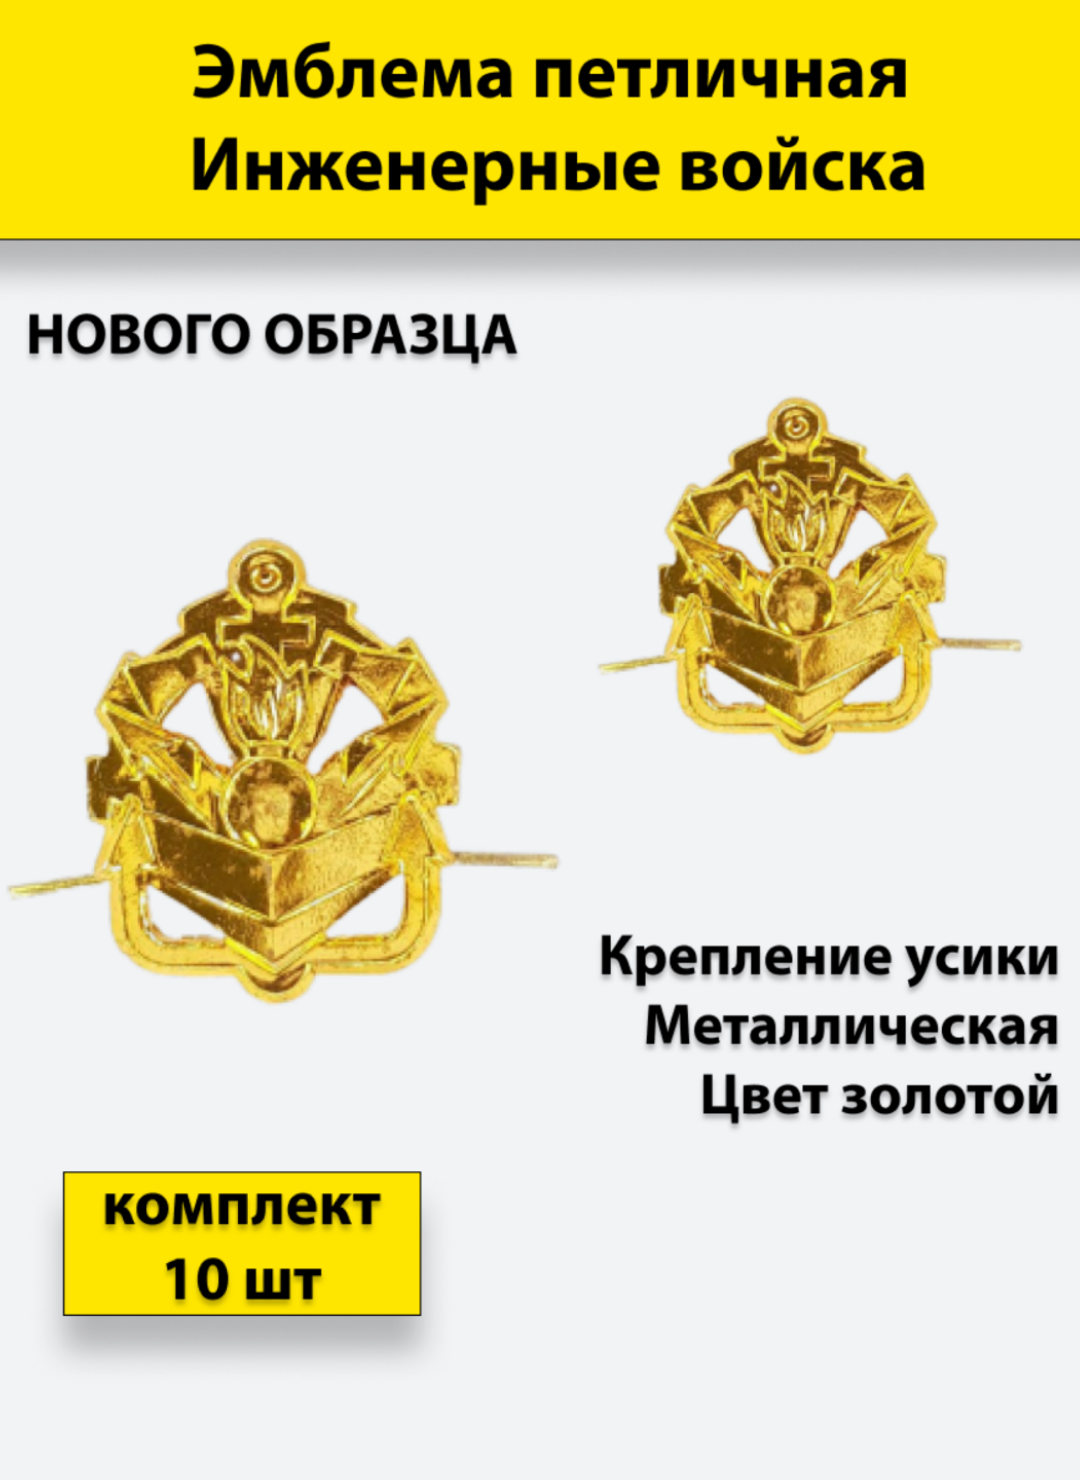 Эмблема петличная Инженерные войска нового образца золотая, 10 штук, металлические